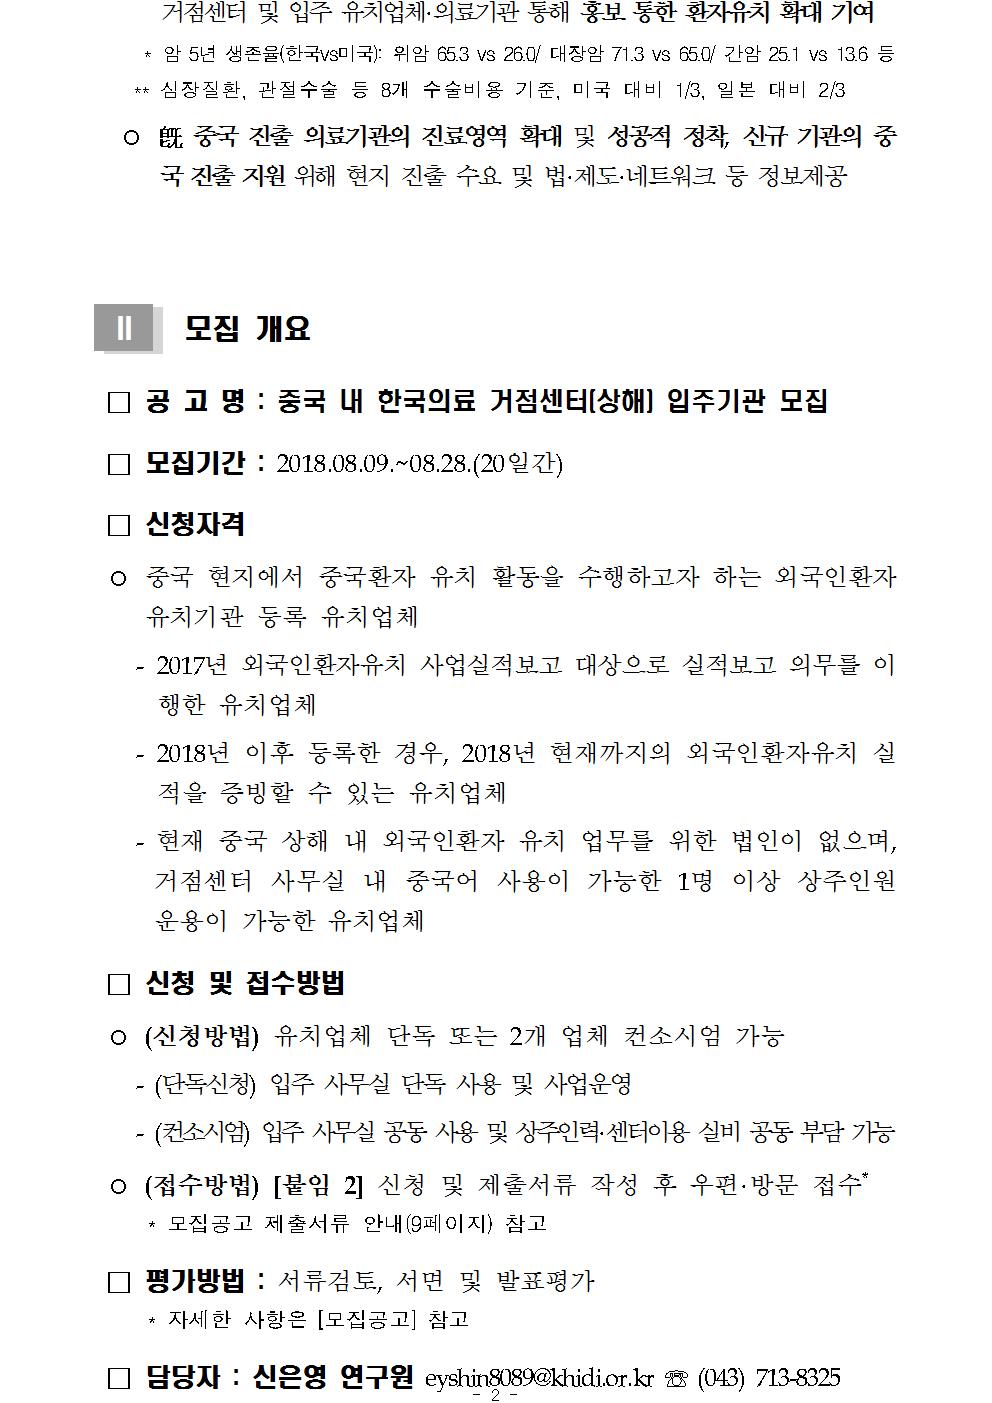 중국 내 한국의료 거점센터(상해) 내 입주기관 모집공고